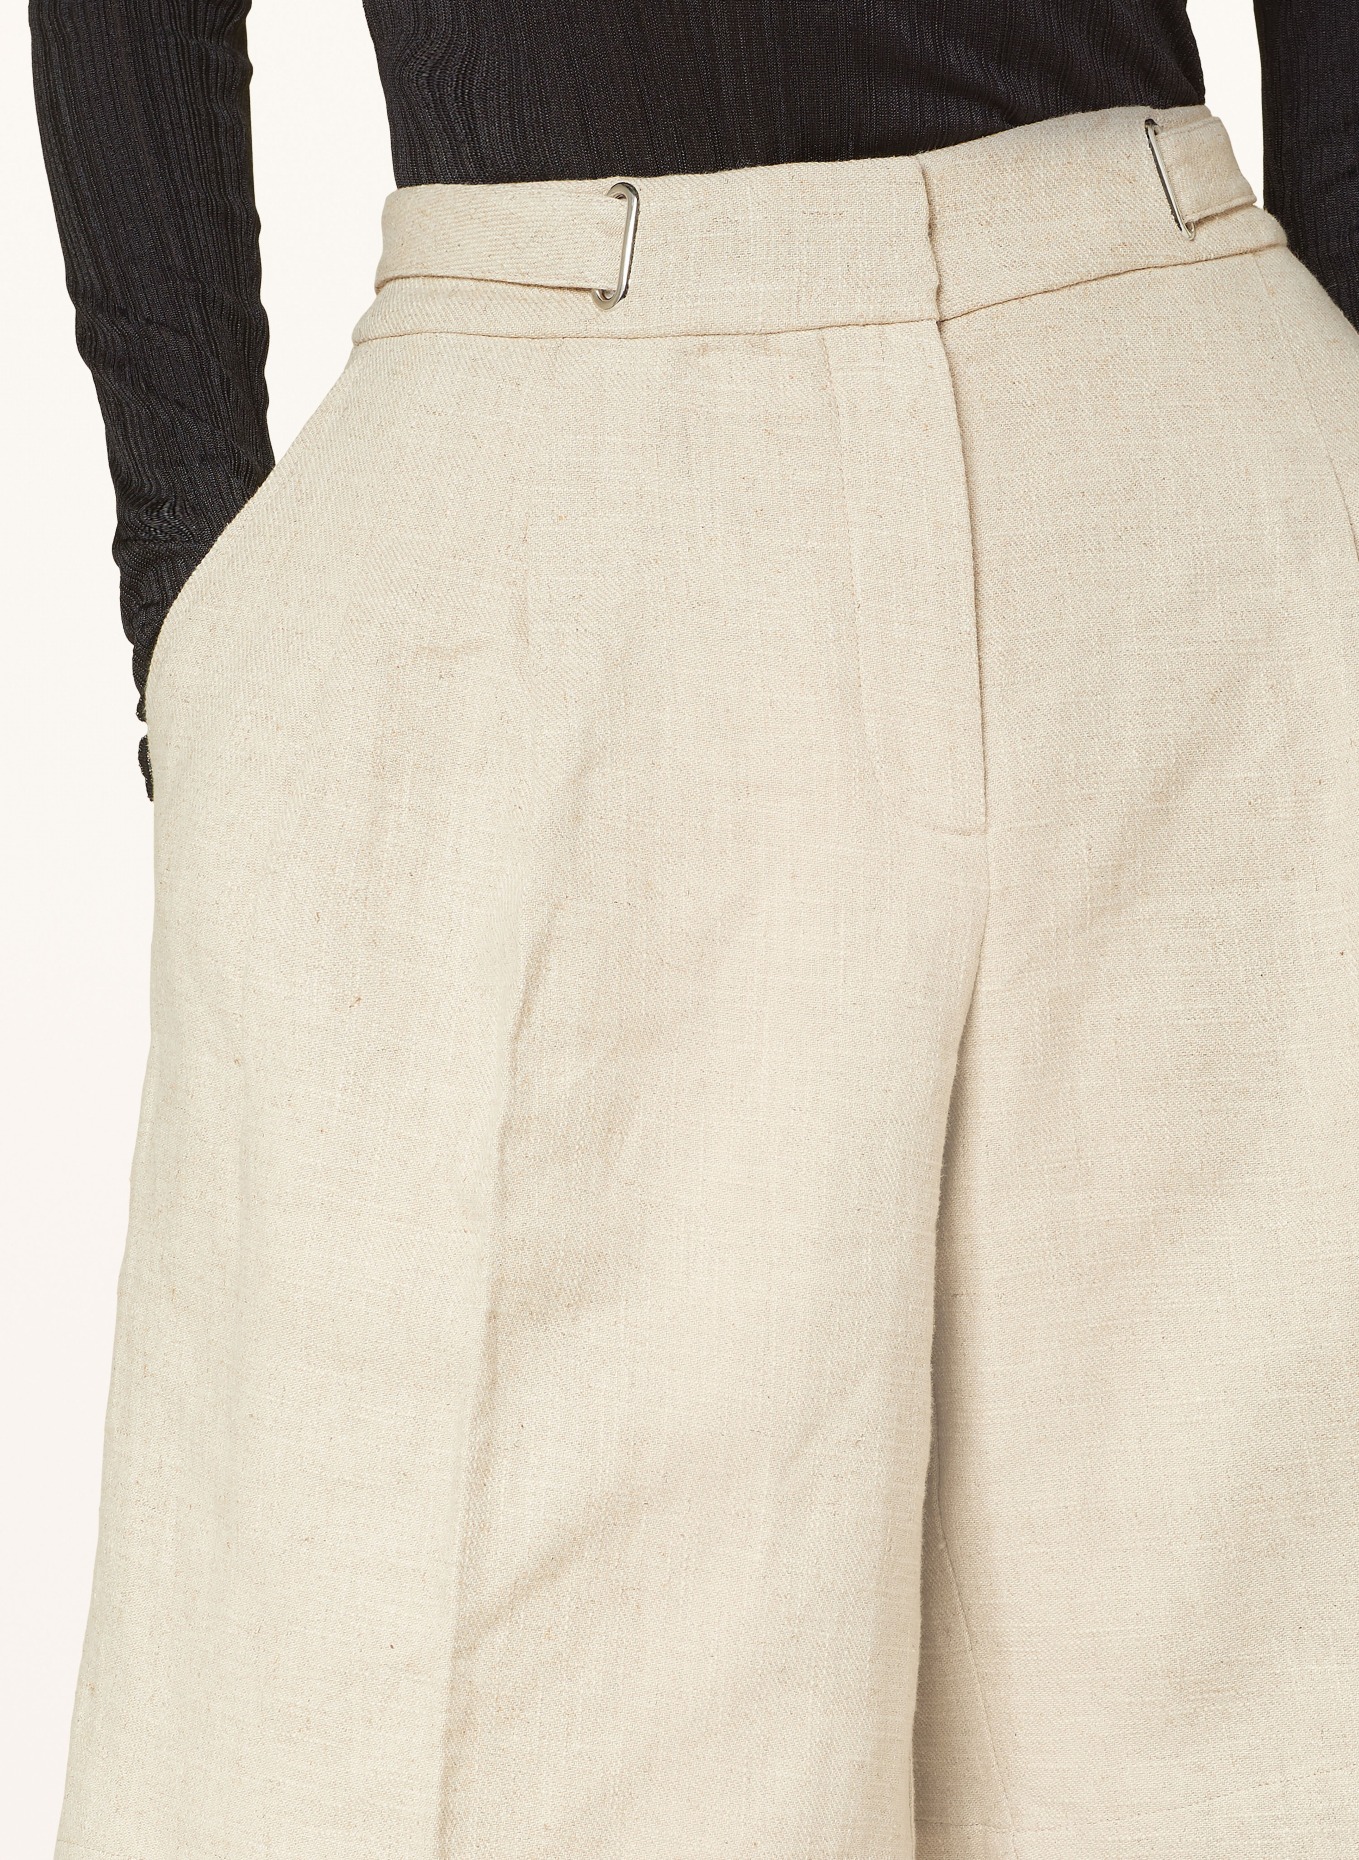 REMAIN Linen shorts, Color: ECRU (Image 5)